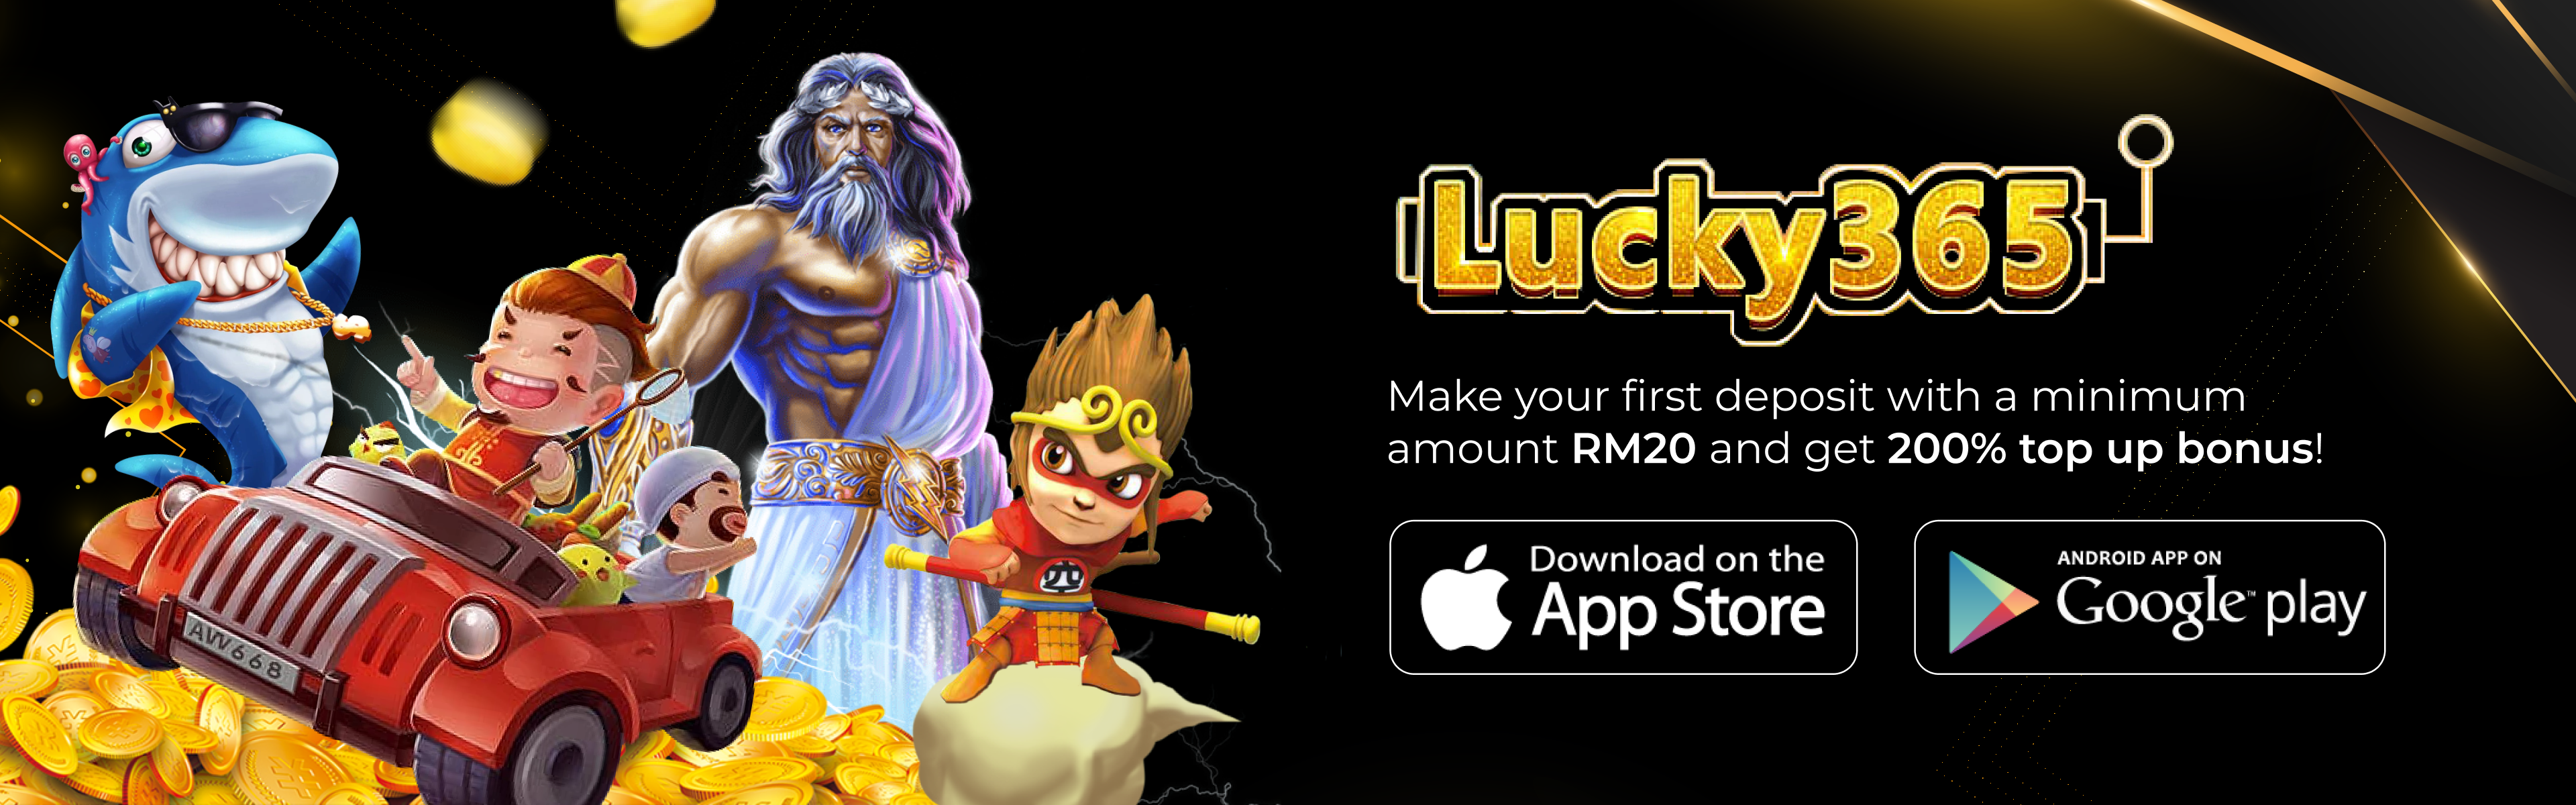 lucky365.win-banner